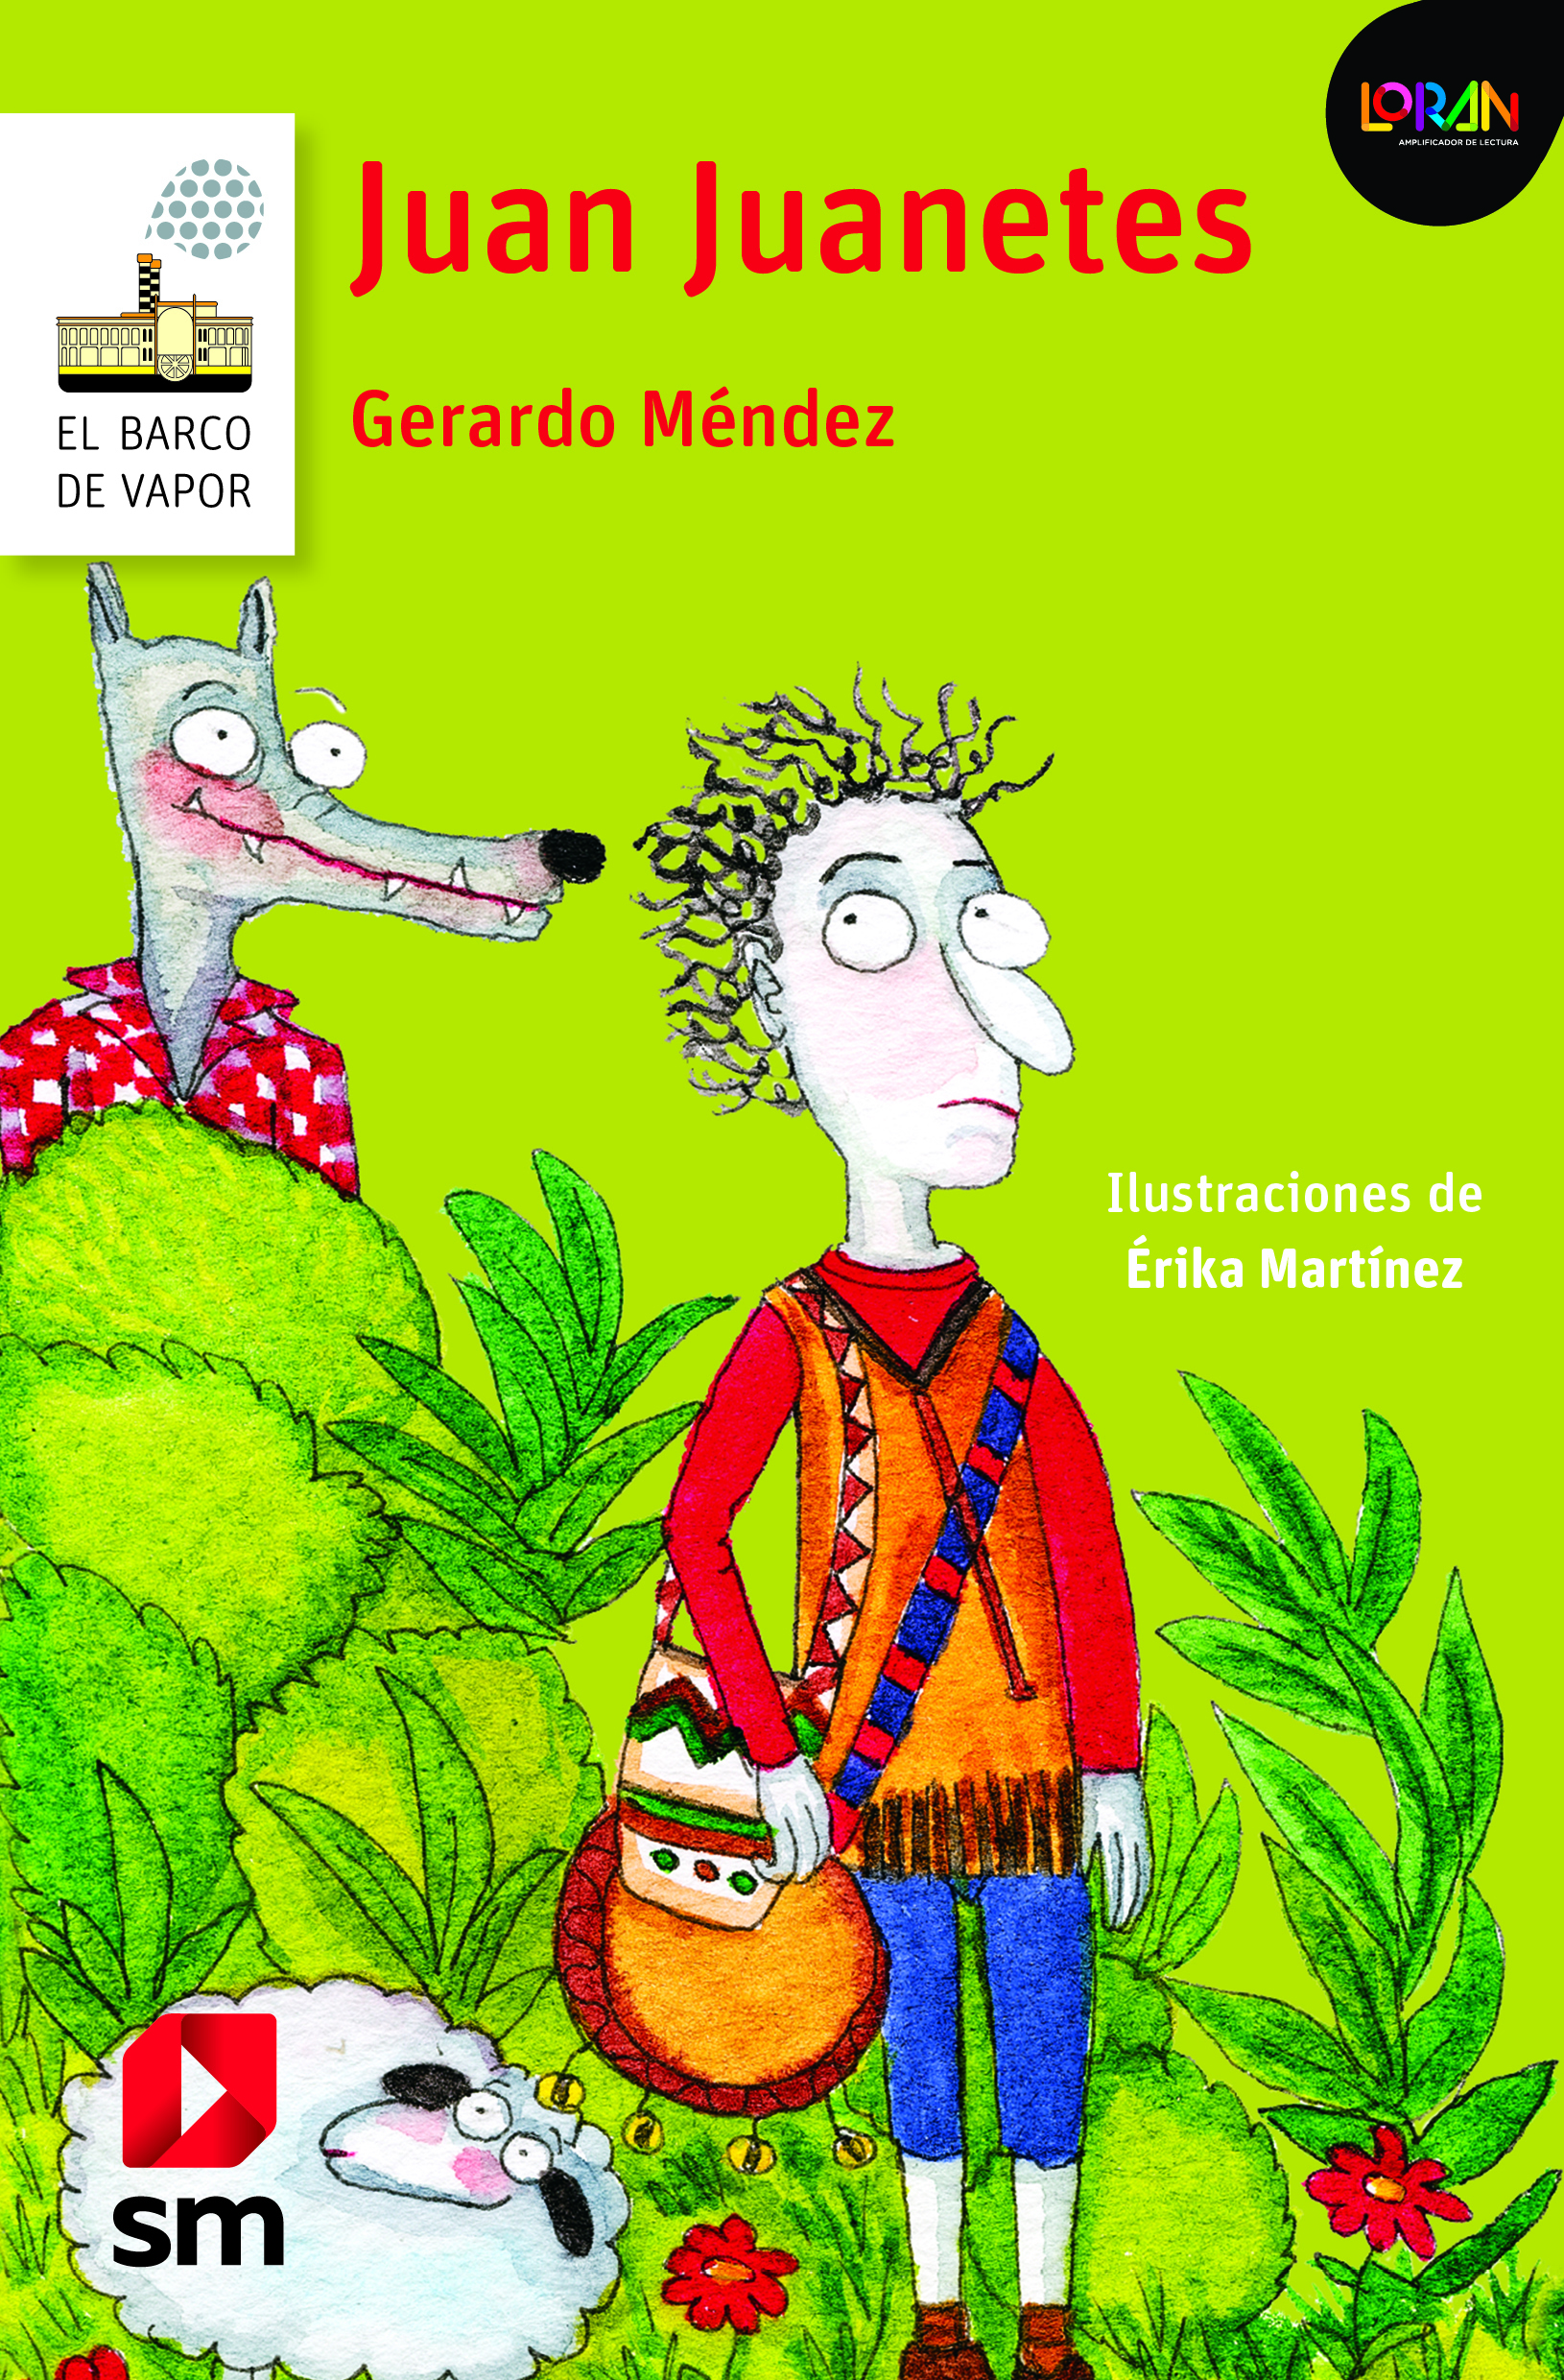 Juan Juanetes. Libro digital LORAN